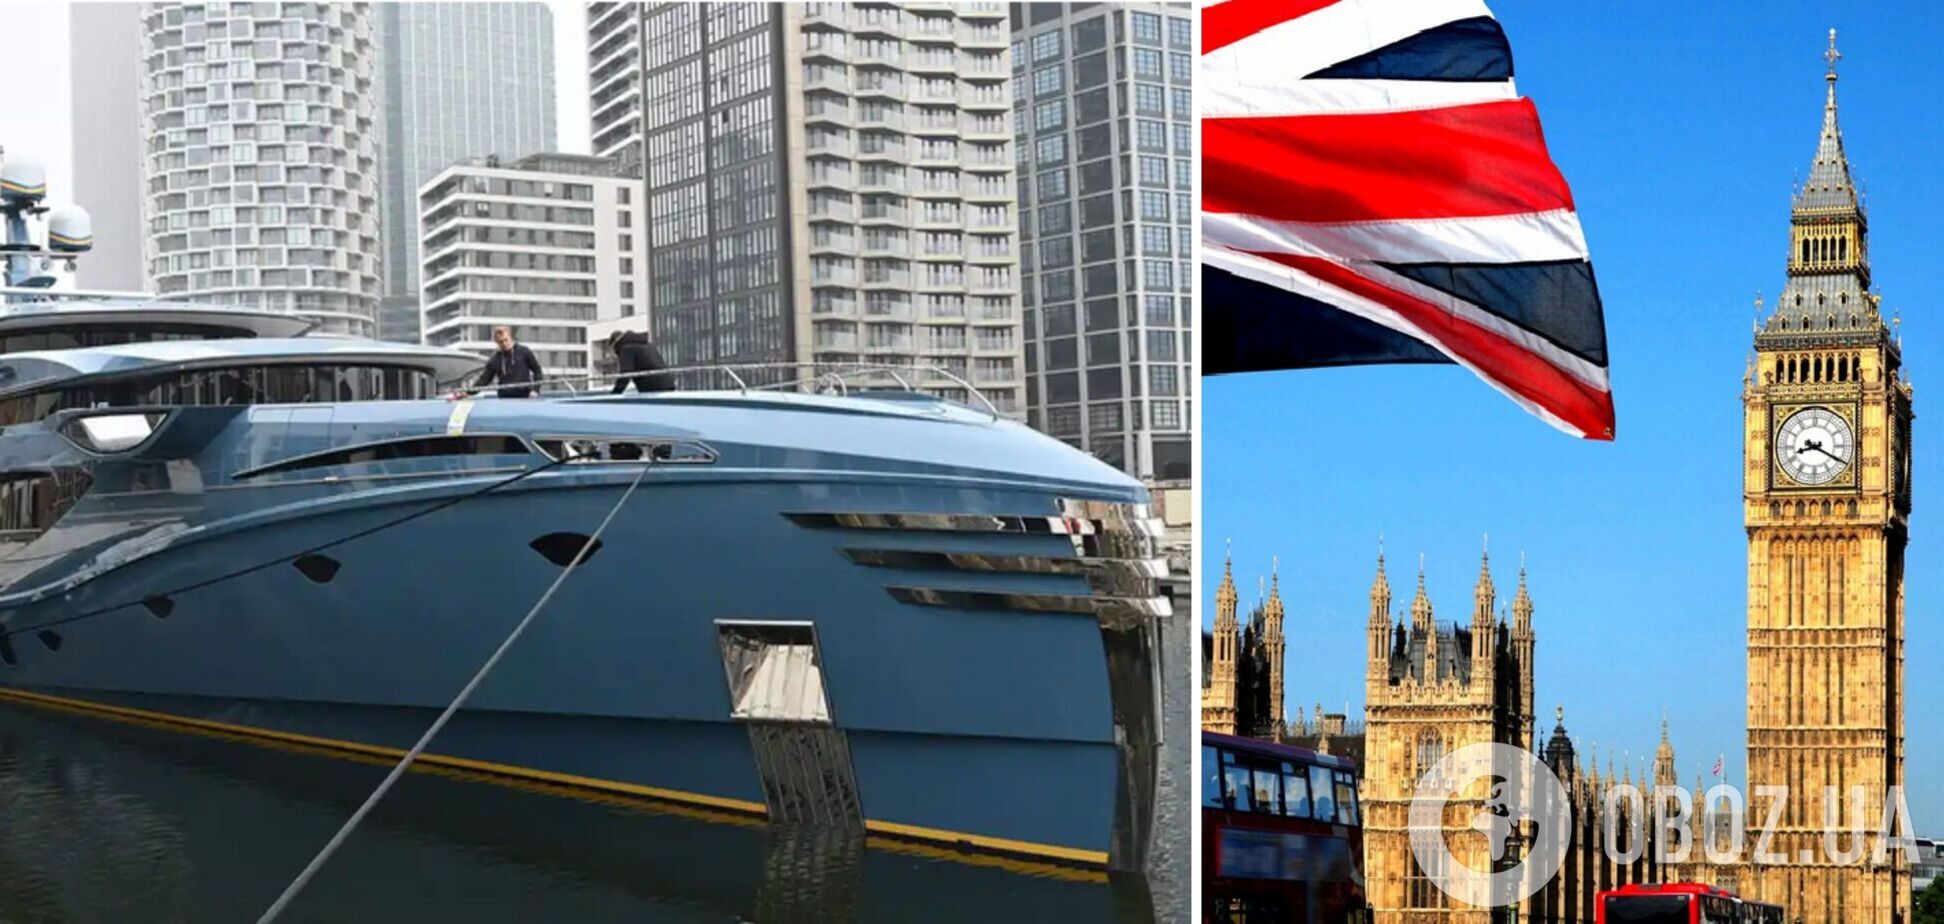 Поміняв Путіна на яхту: російський олігарх позивається до Великої Британії за арештоване судно